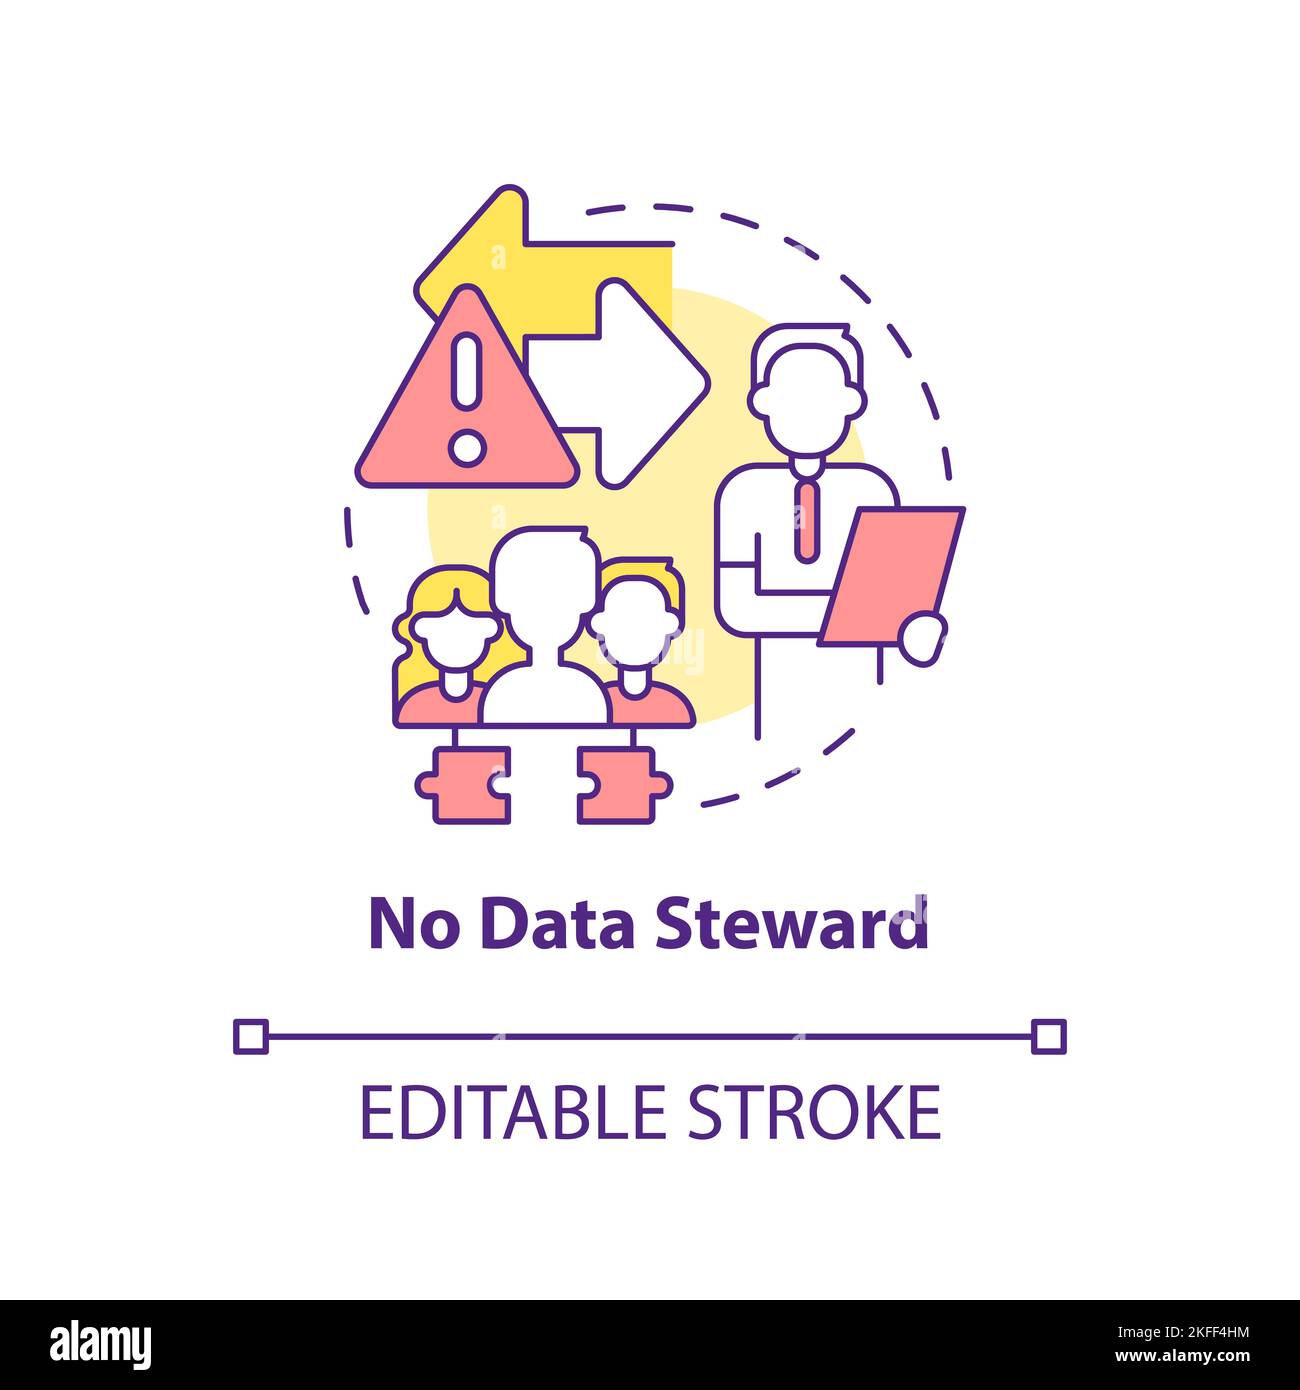 No data steward concept icon Stock Vector